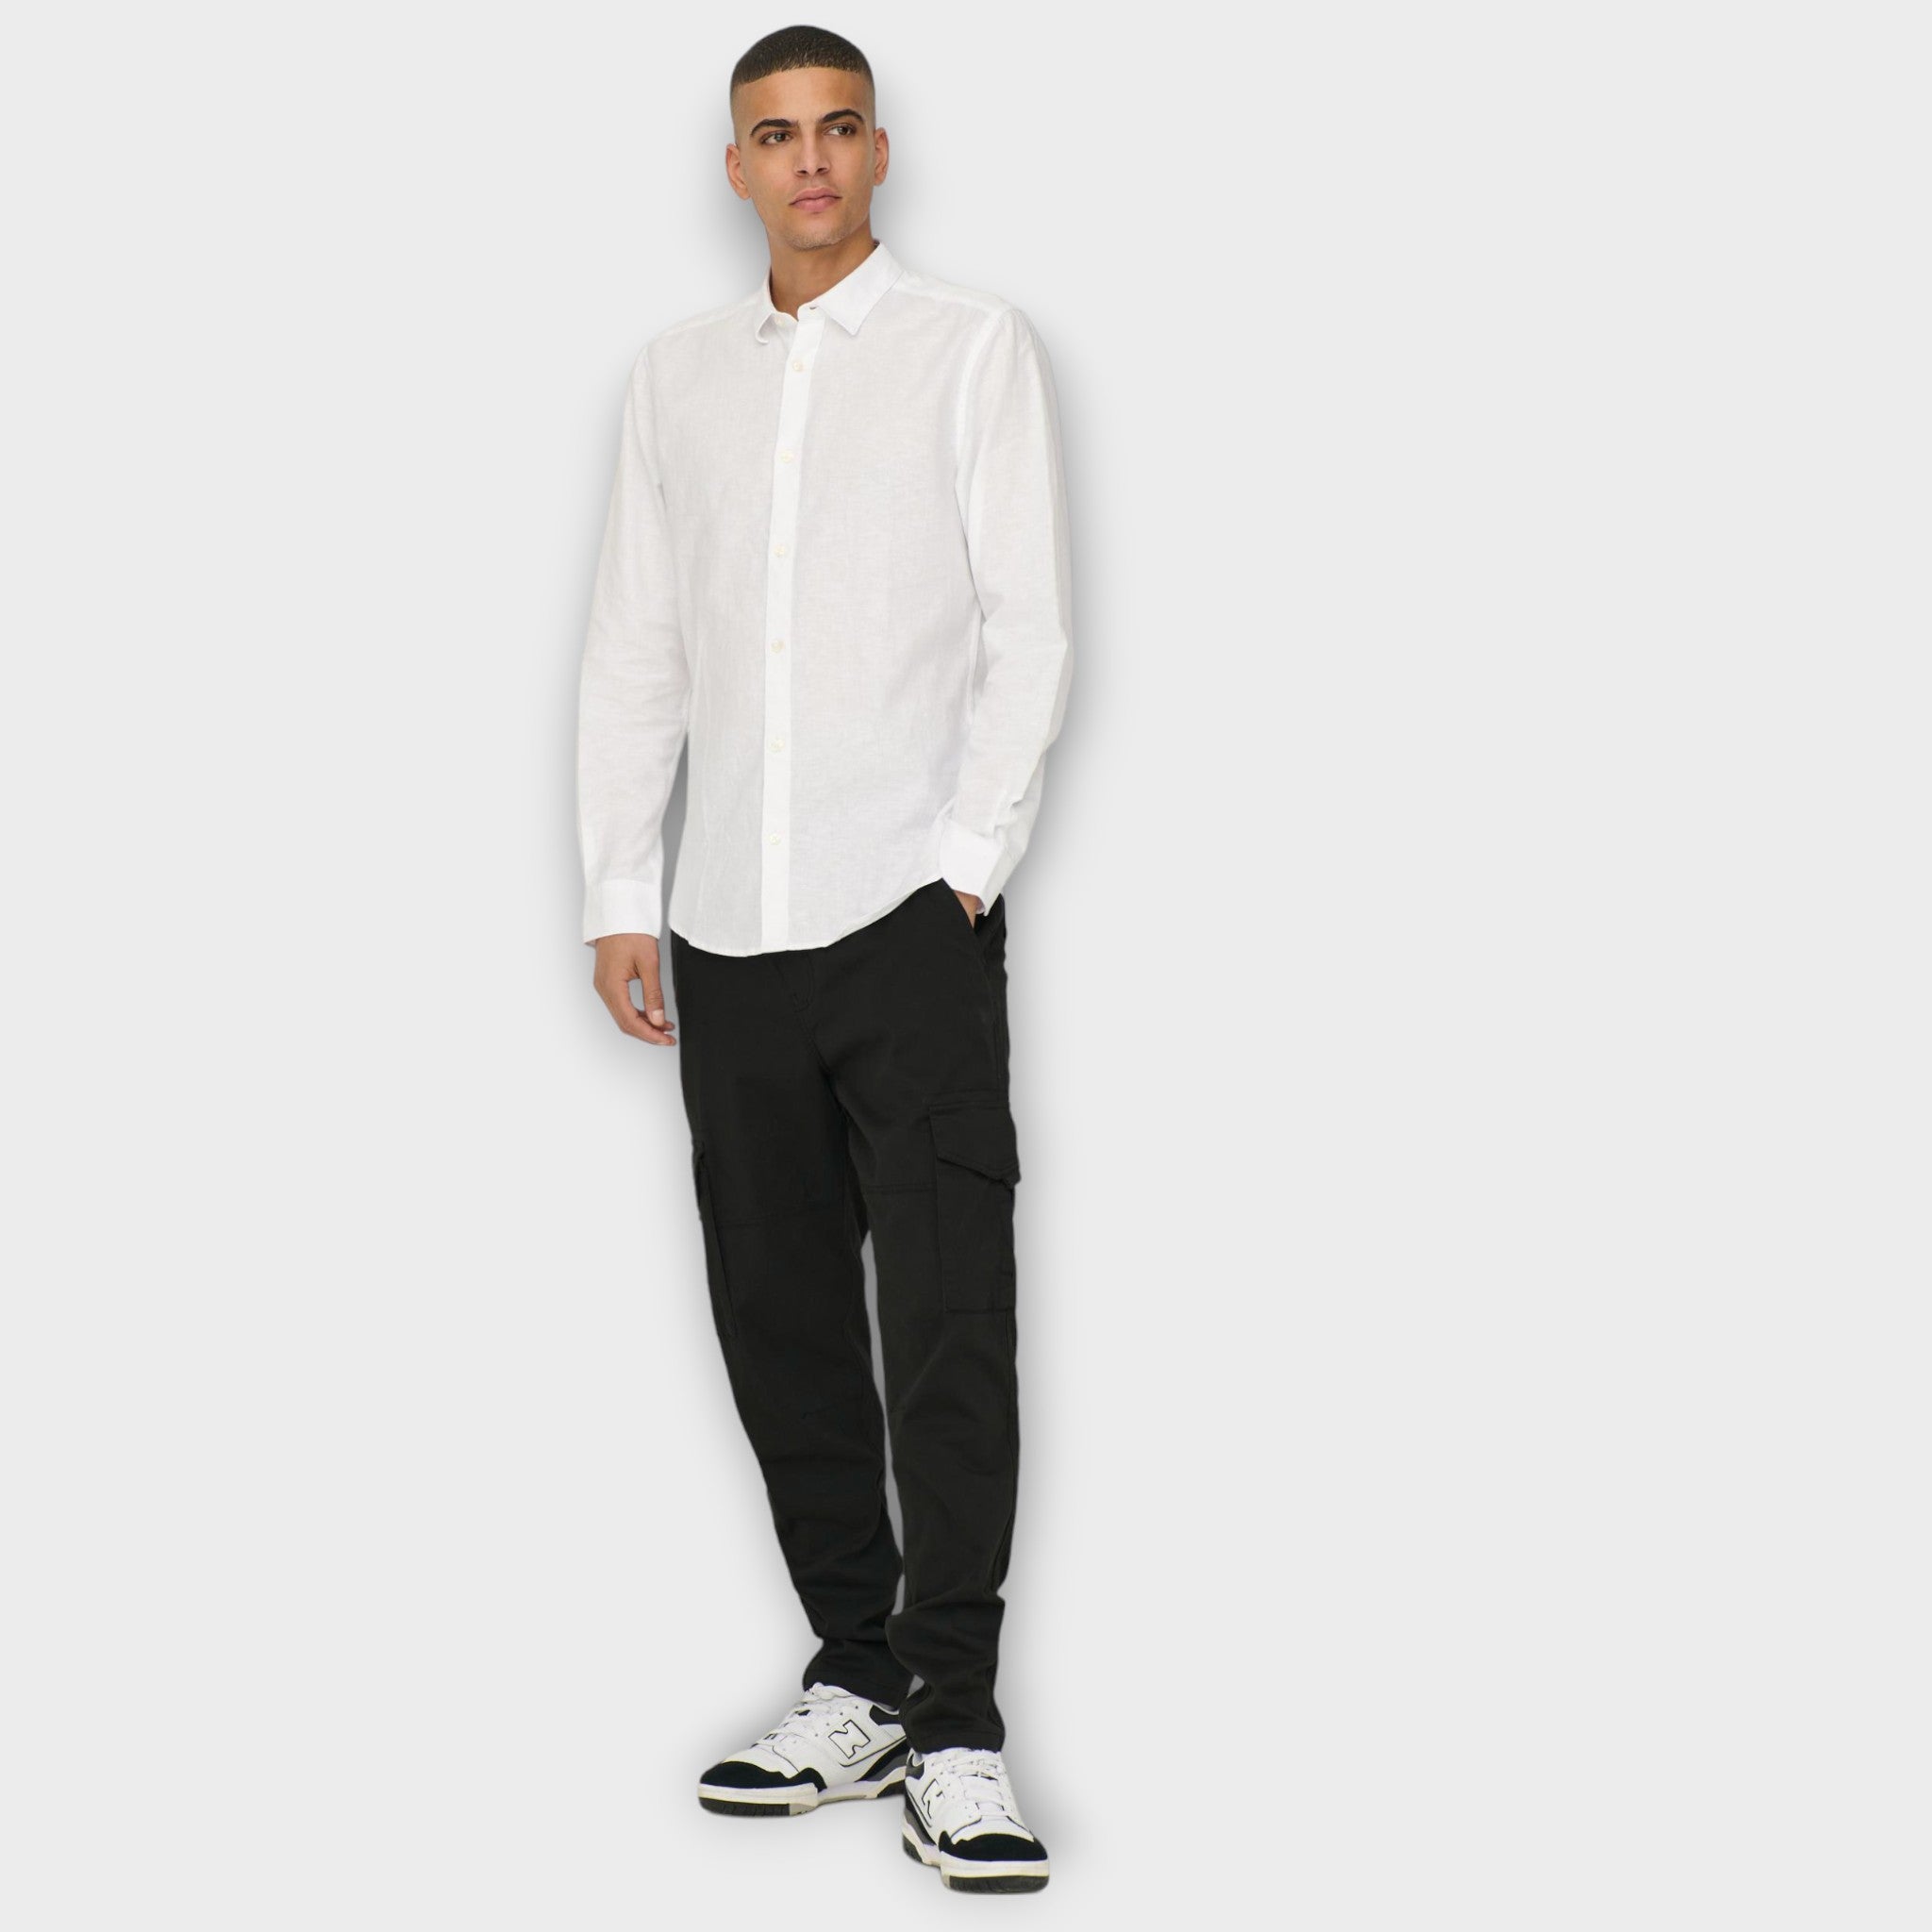 Caiden  LS Solid Linen Shirt  White, Only and Sons hvid langærmet hørskjorte til herre. Her set på model i fuld figur.